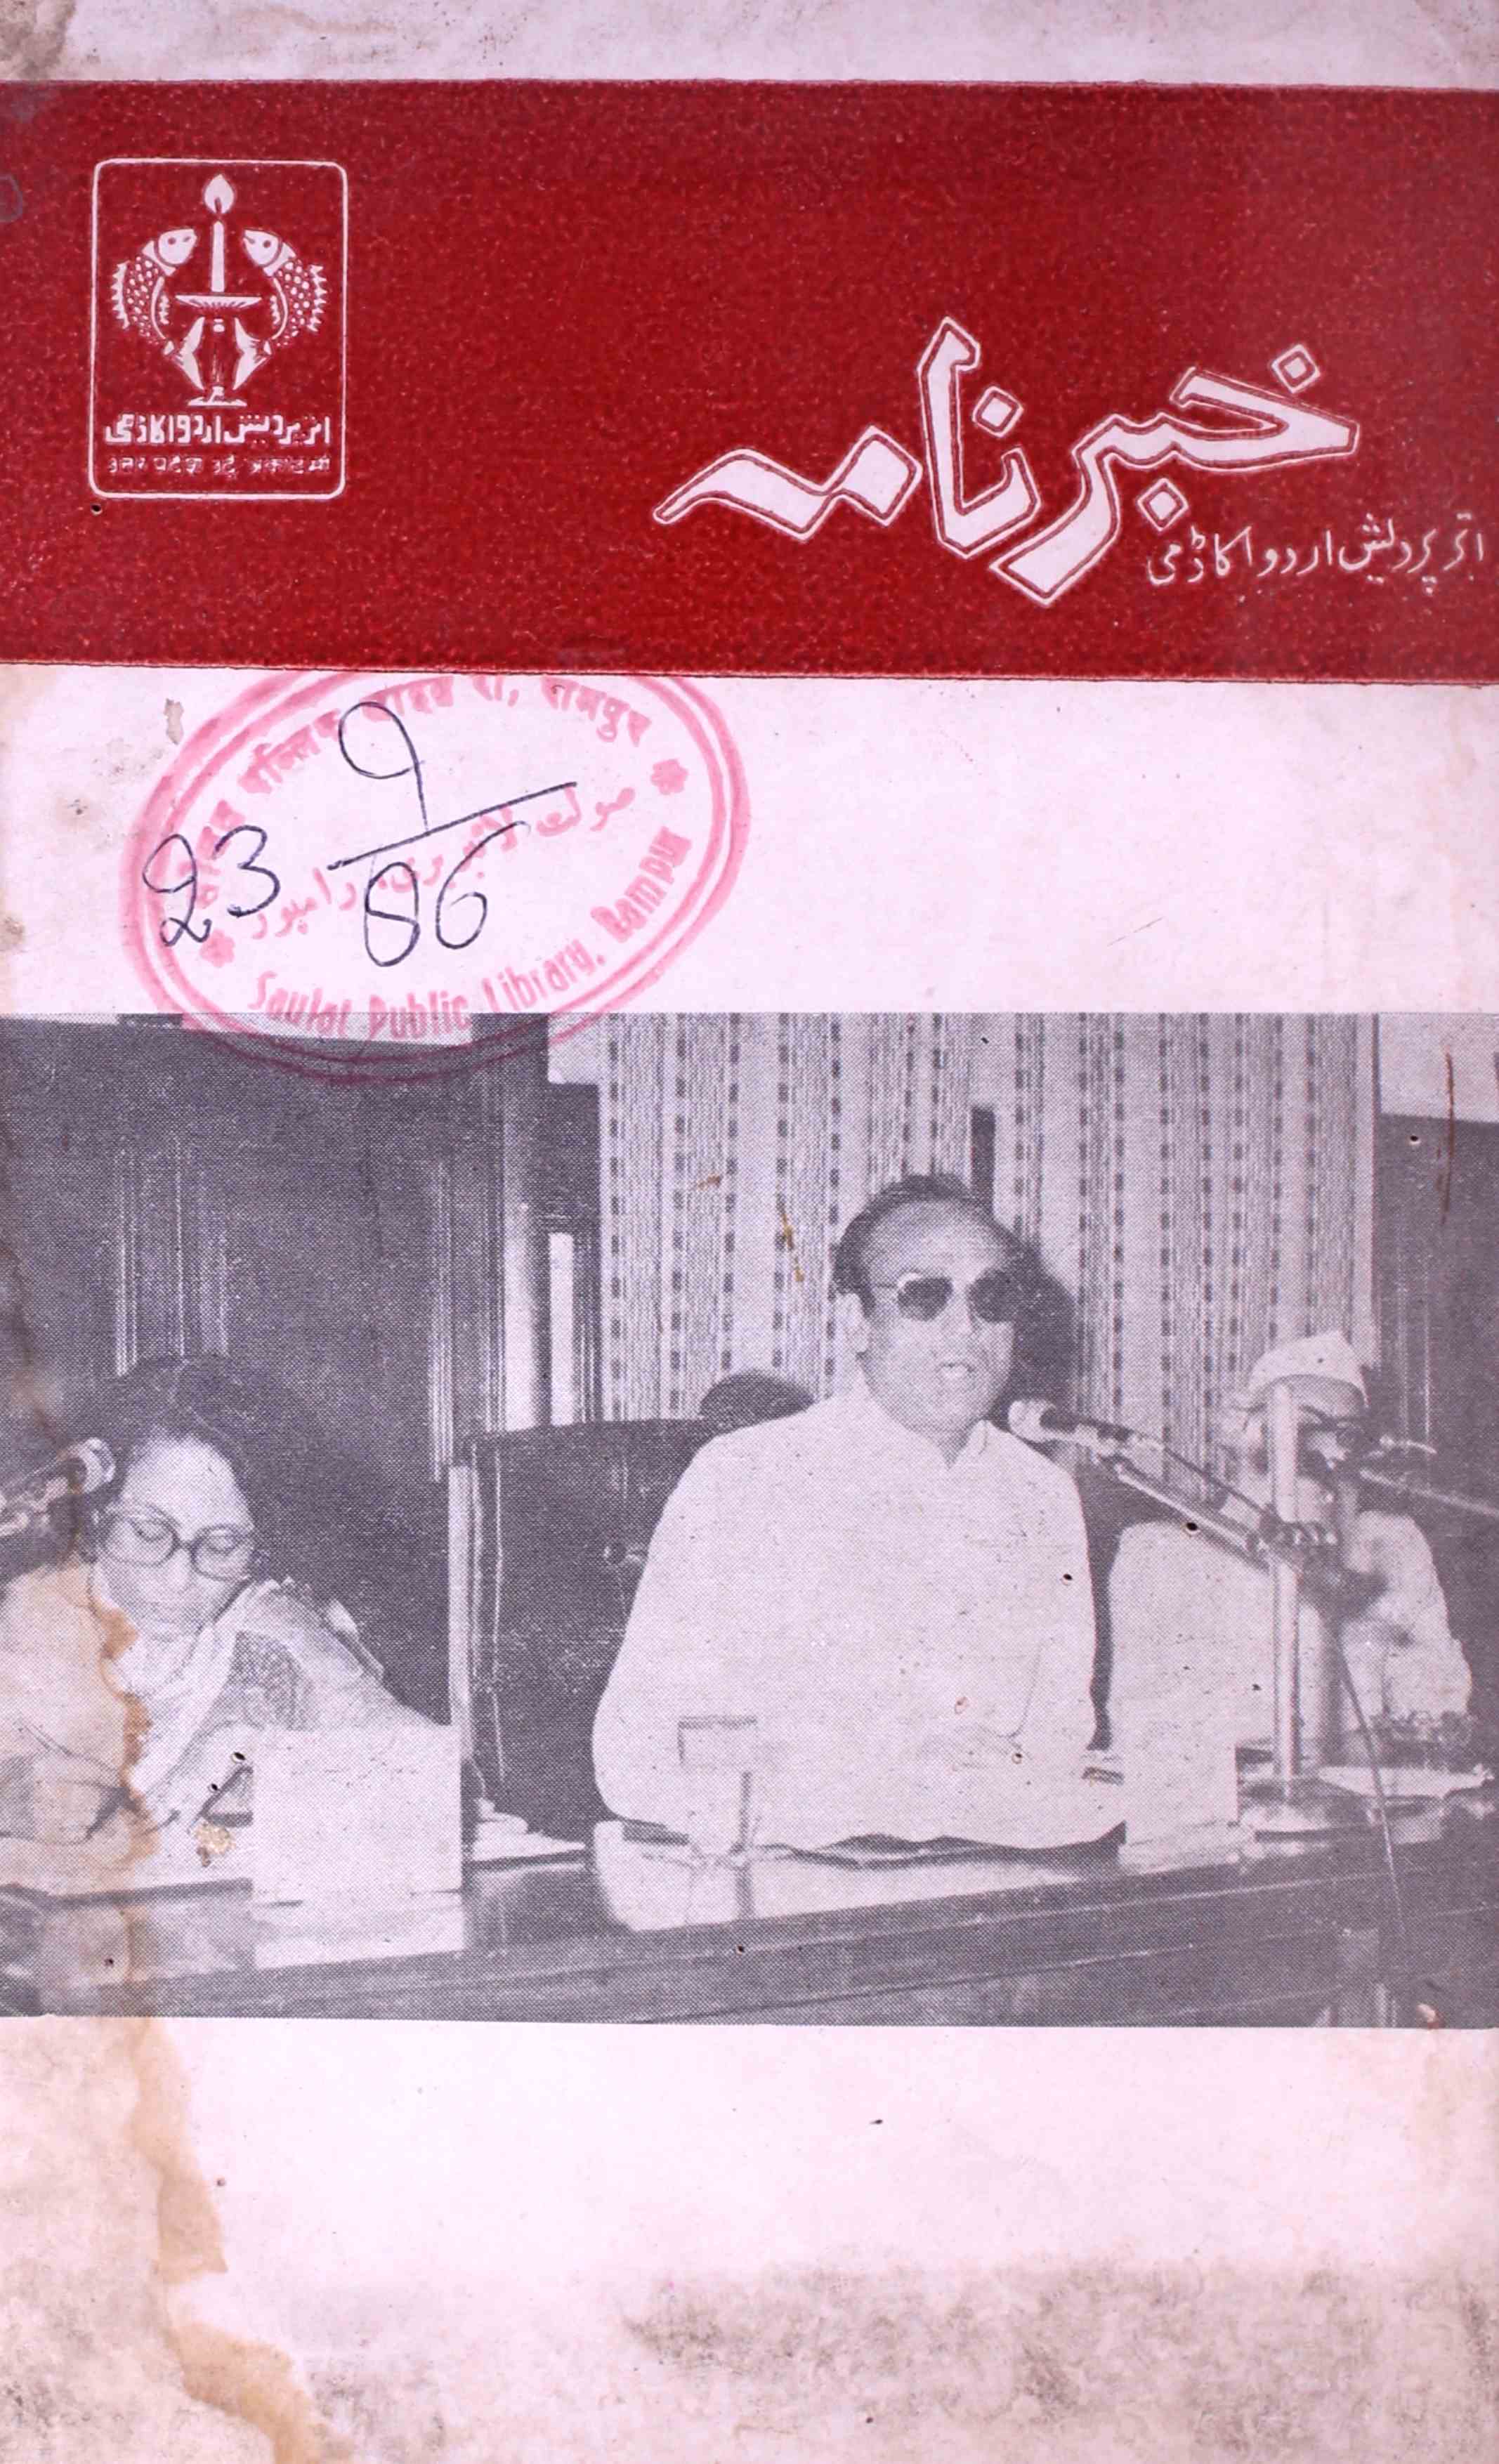 Khabarnama Jild 15 Shumara 2-3 Aug-Sep 1986